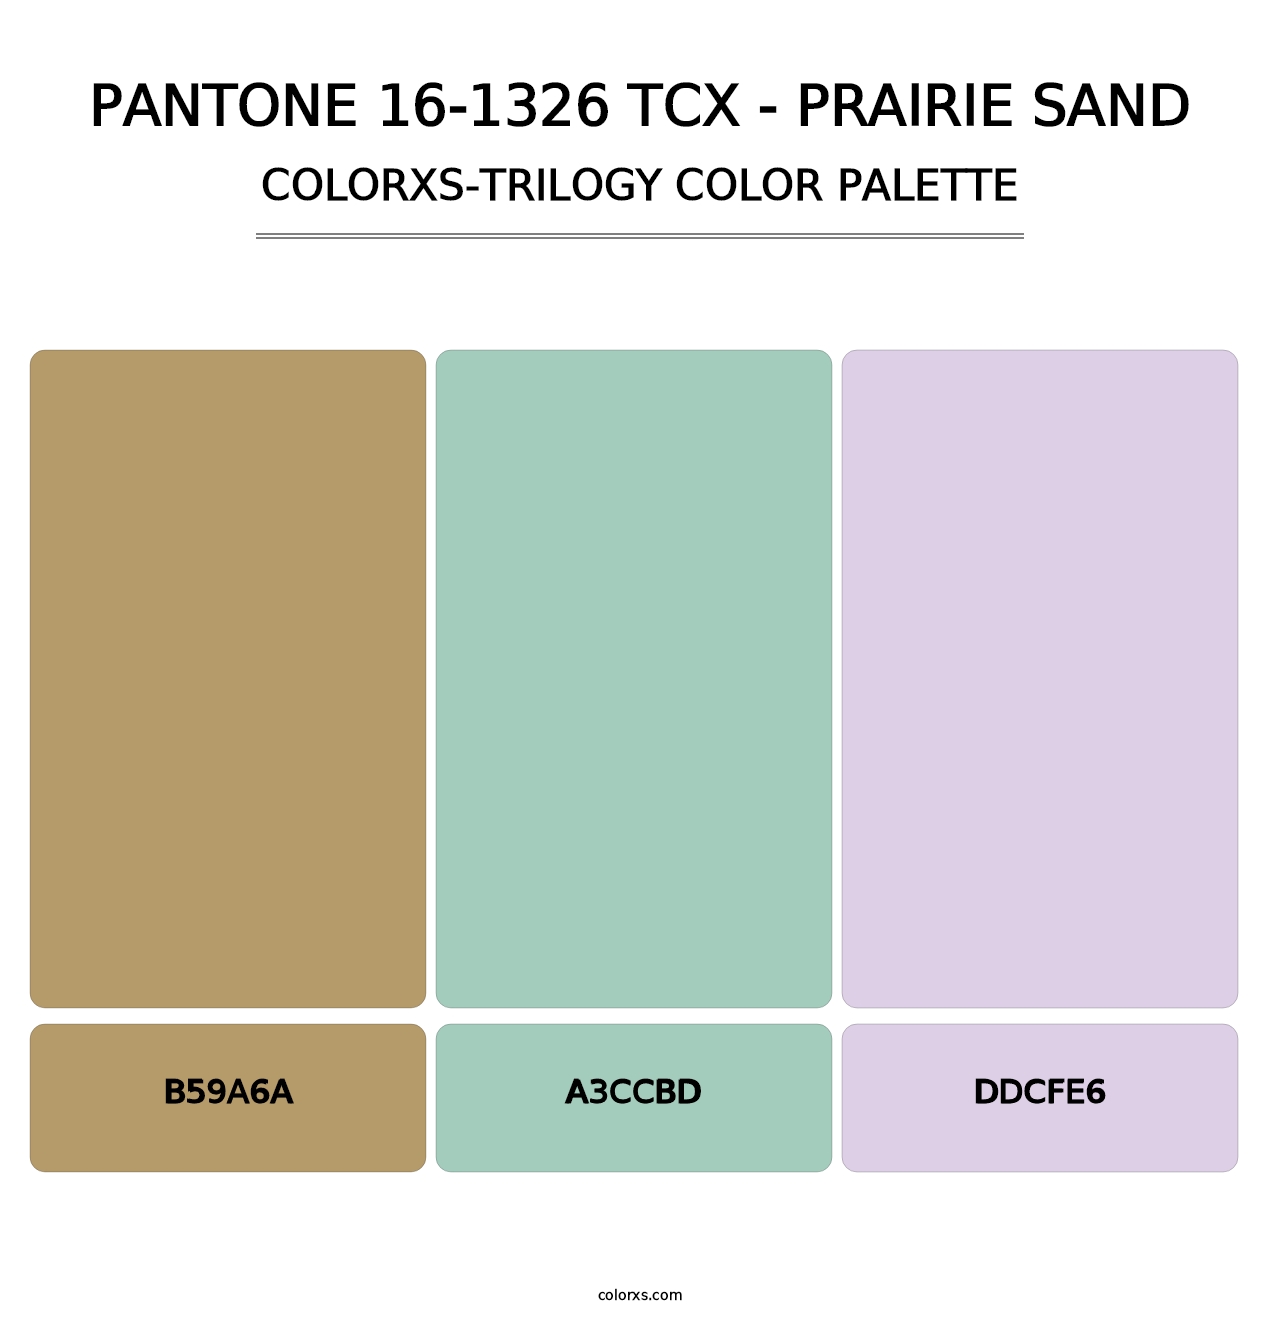 PANTONE 16-1326 TCX - Prairie Sand - Colorxs Trilogy Palette